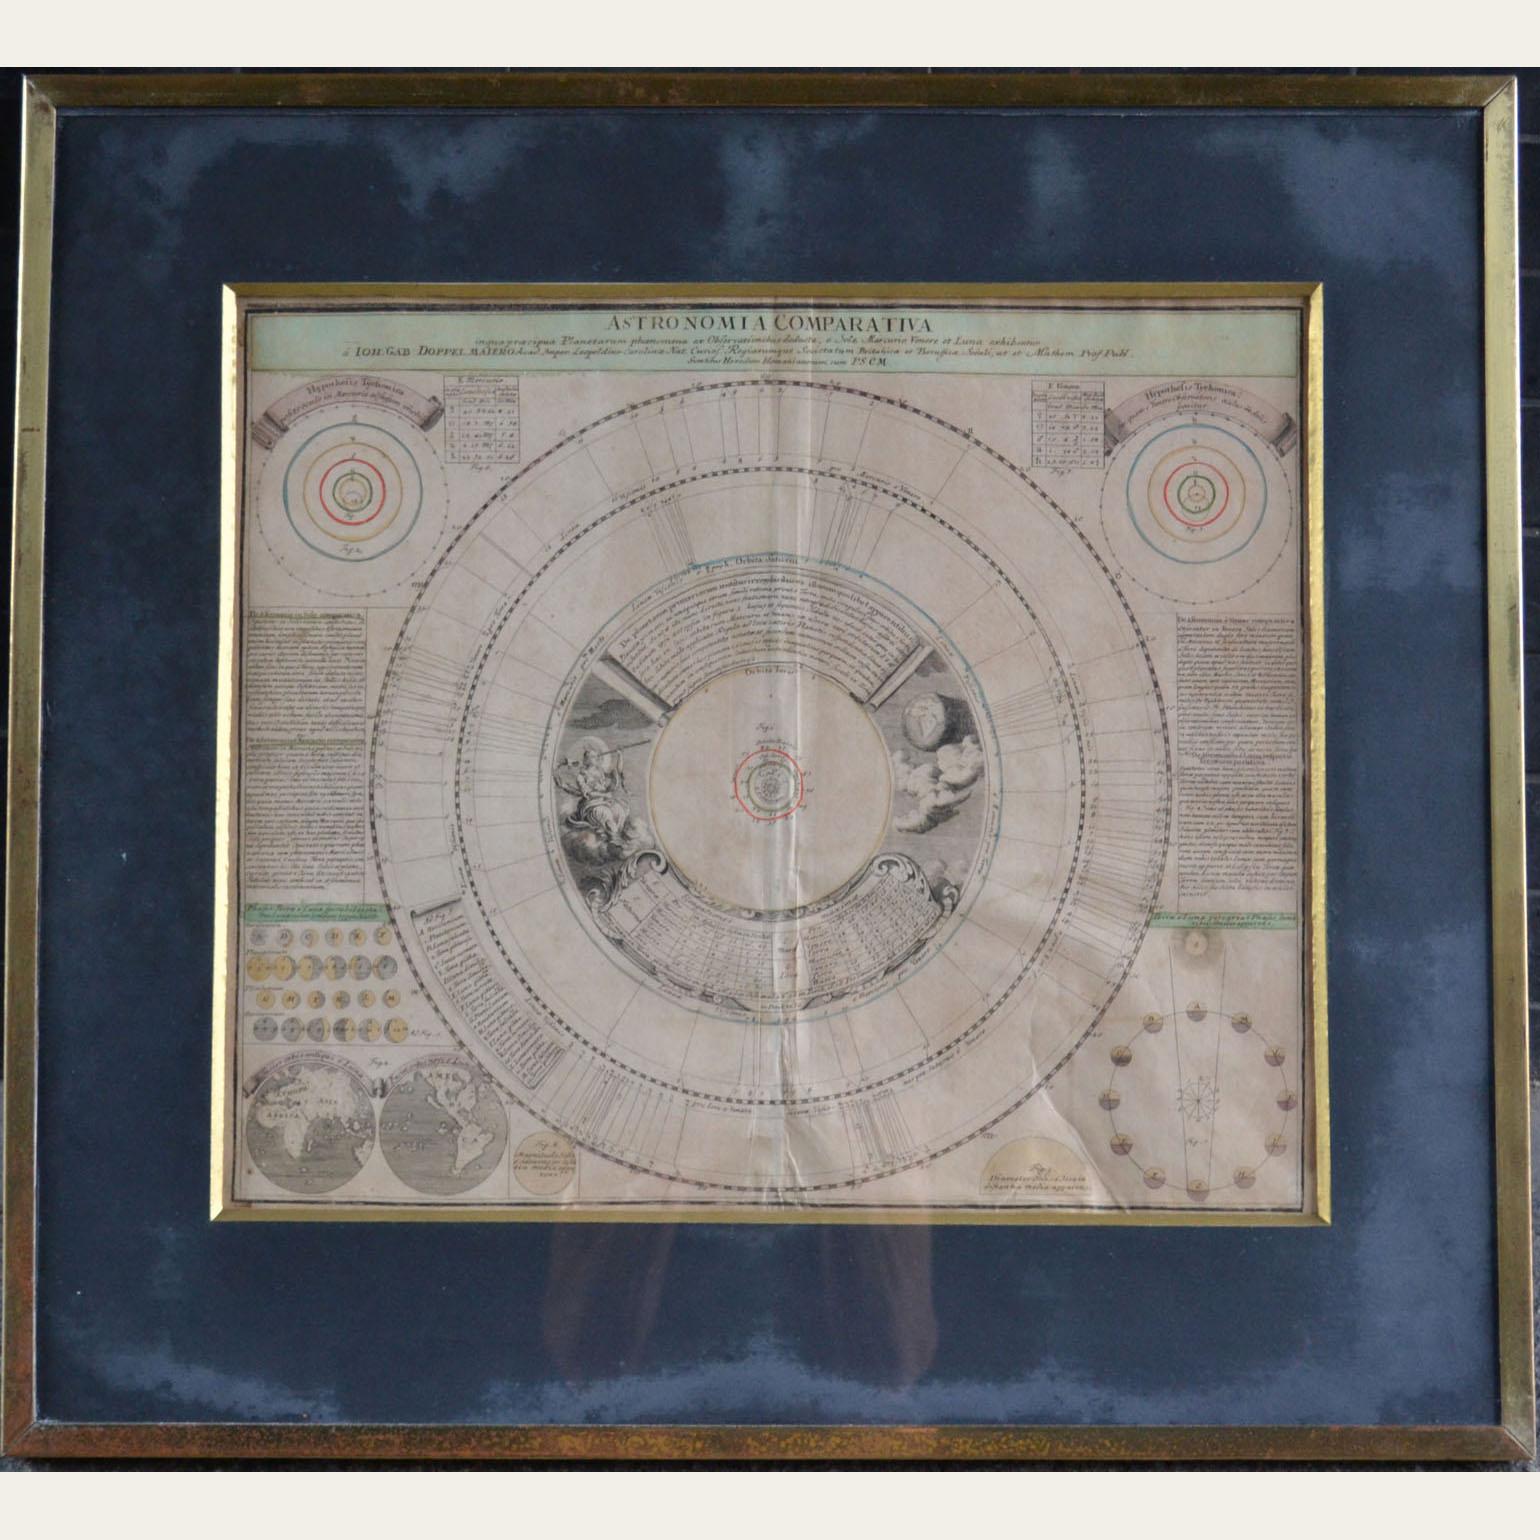 Satz von vier Original-Kupferstichen der Himmelskarten aus dem 18. Jahrhundert, herausgegeben von Homann. Doppelmayr ist der Kartograph, Astronom und Mathematiker. Von 1704 bis 1750 war er Professor für Mathematik am Aegidien-Gymnasium in Nürnberg.